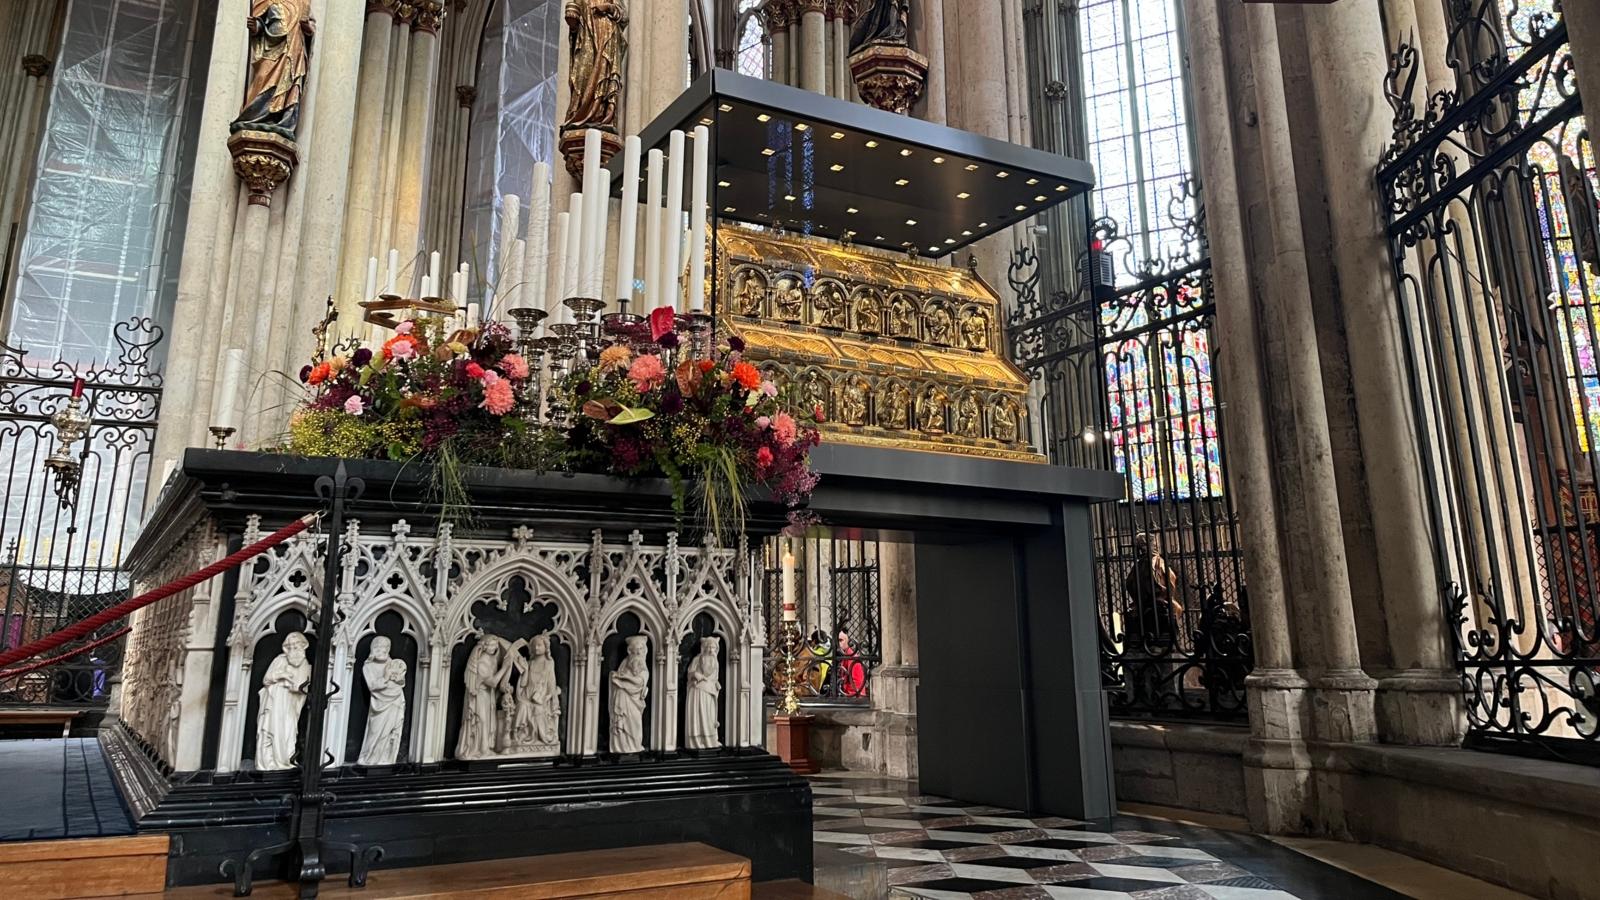 Zur Dreikönigswallfahrt 2022 ist der Hochaltar vor dem Dreikönigsschrein festlich mit Blumen und Kerzen geschmückt.